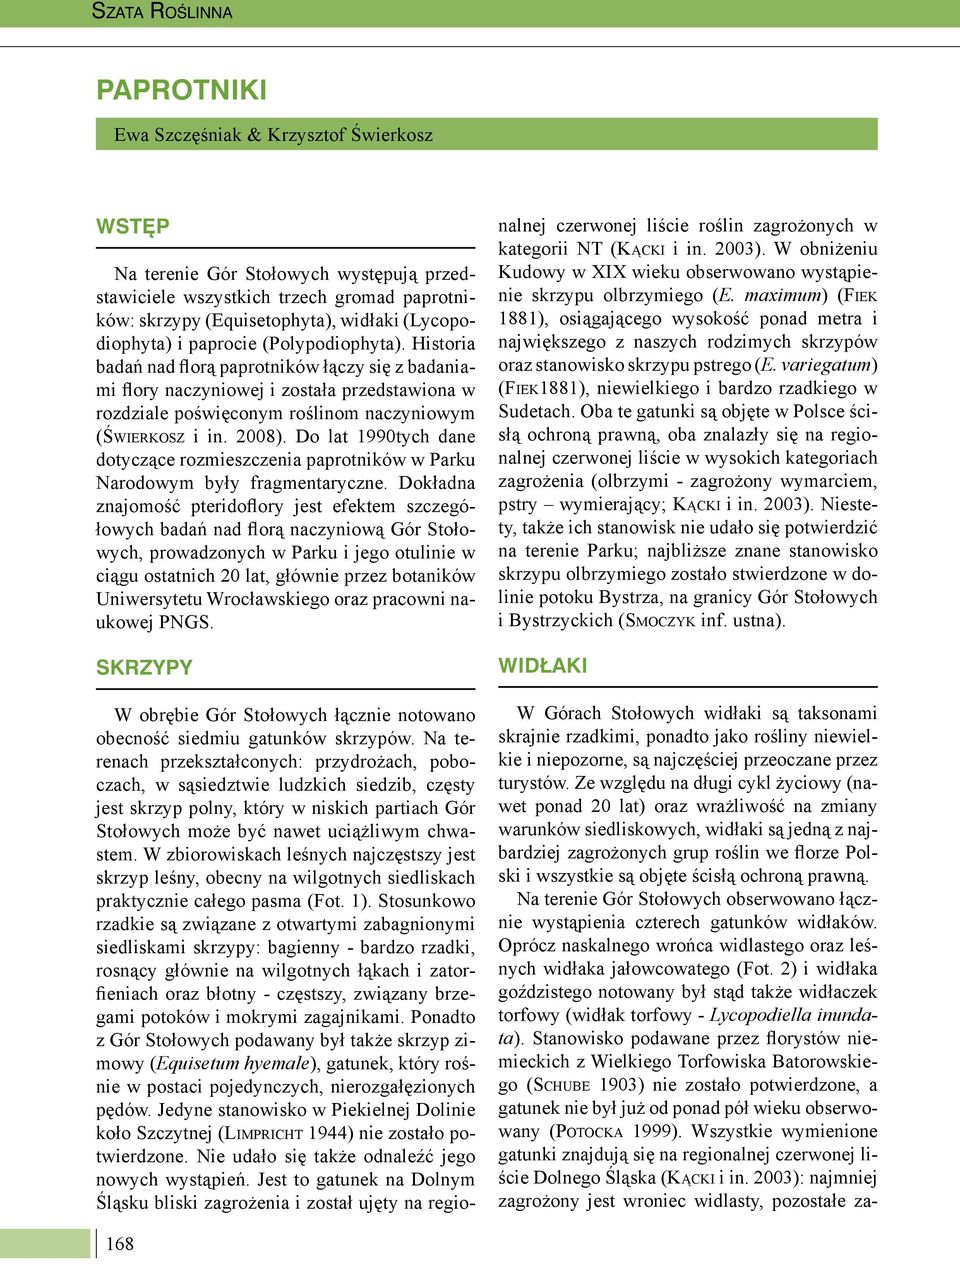 Historia badań nad florą paprotników łączy się z badaniami flory naczyniowej i została przedstawiona w rozdziale poświęconym roślinom naczyniowym (ŚWIERKOSZ i in. 2008).